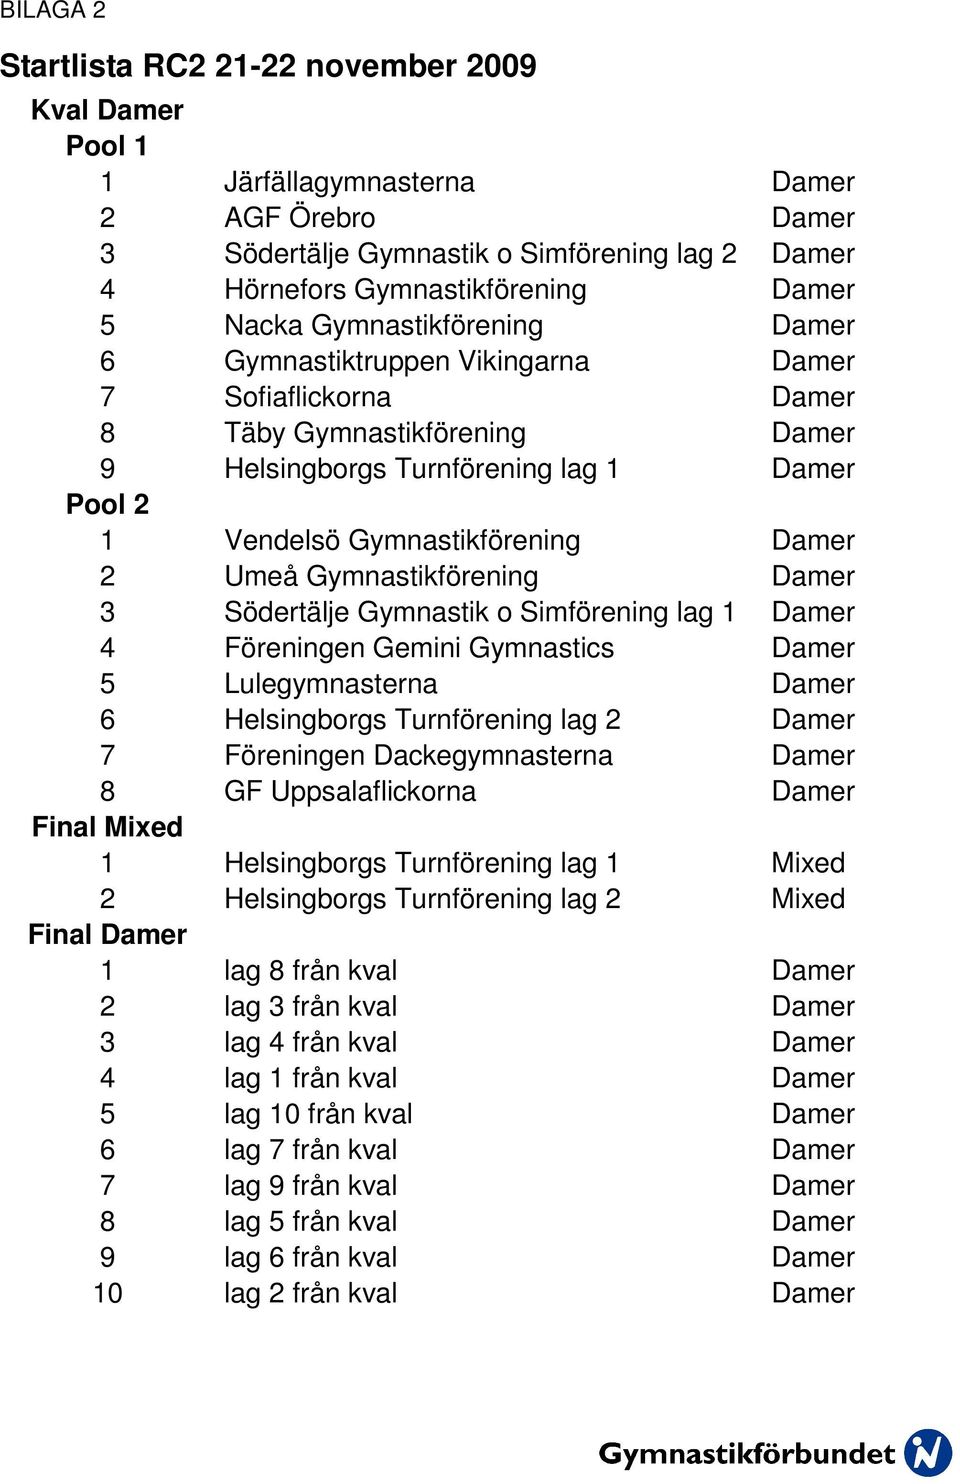 Damer 2 Umeå Gymnastikförening Damer 3 Södertälje Gymnastik o Simförening lag 1 Damer 4 Föreningen Gemini Gymnastics Damer 5 Lulegymnasterna Damer 6 Helsingborgs Turnförening lag 2 Damer 7 Föreningen